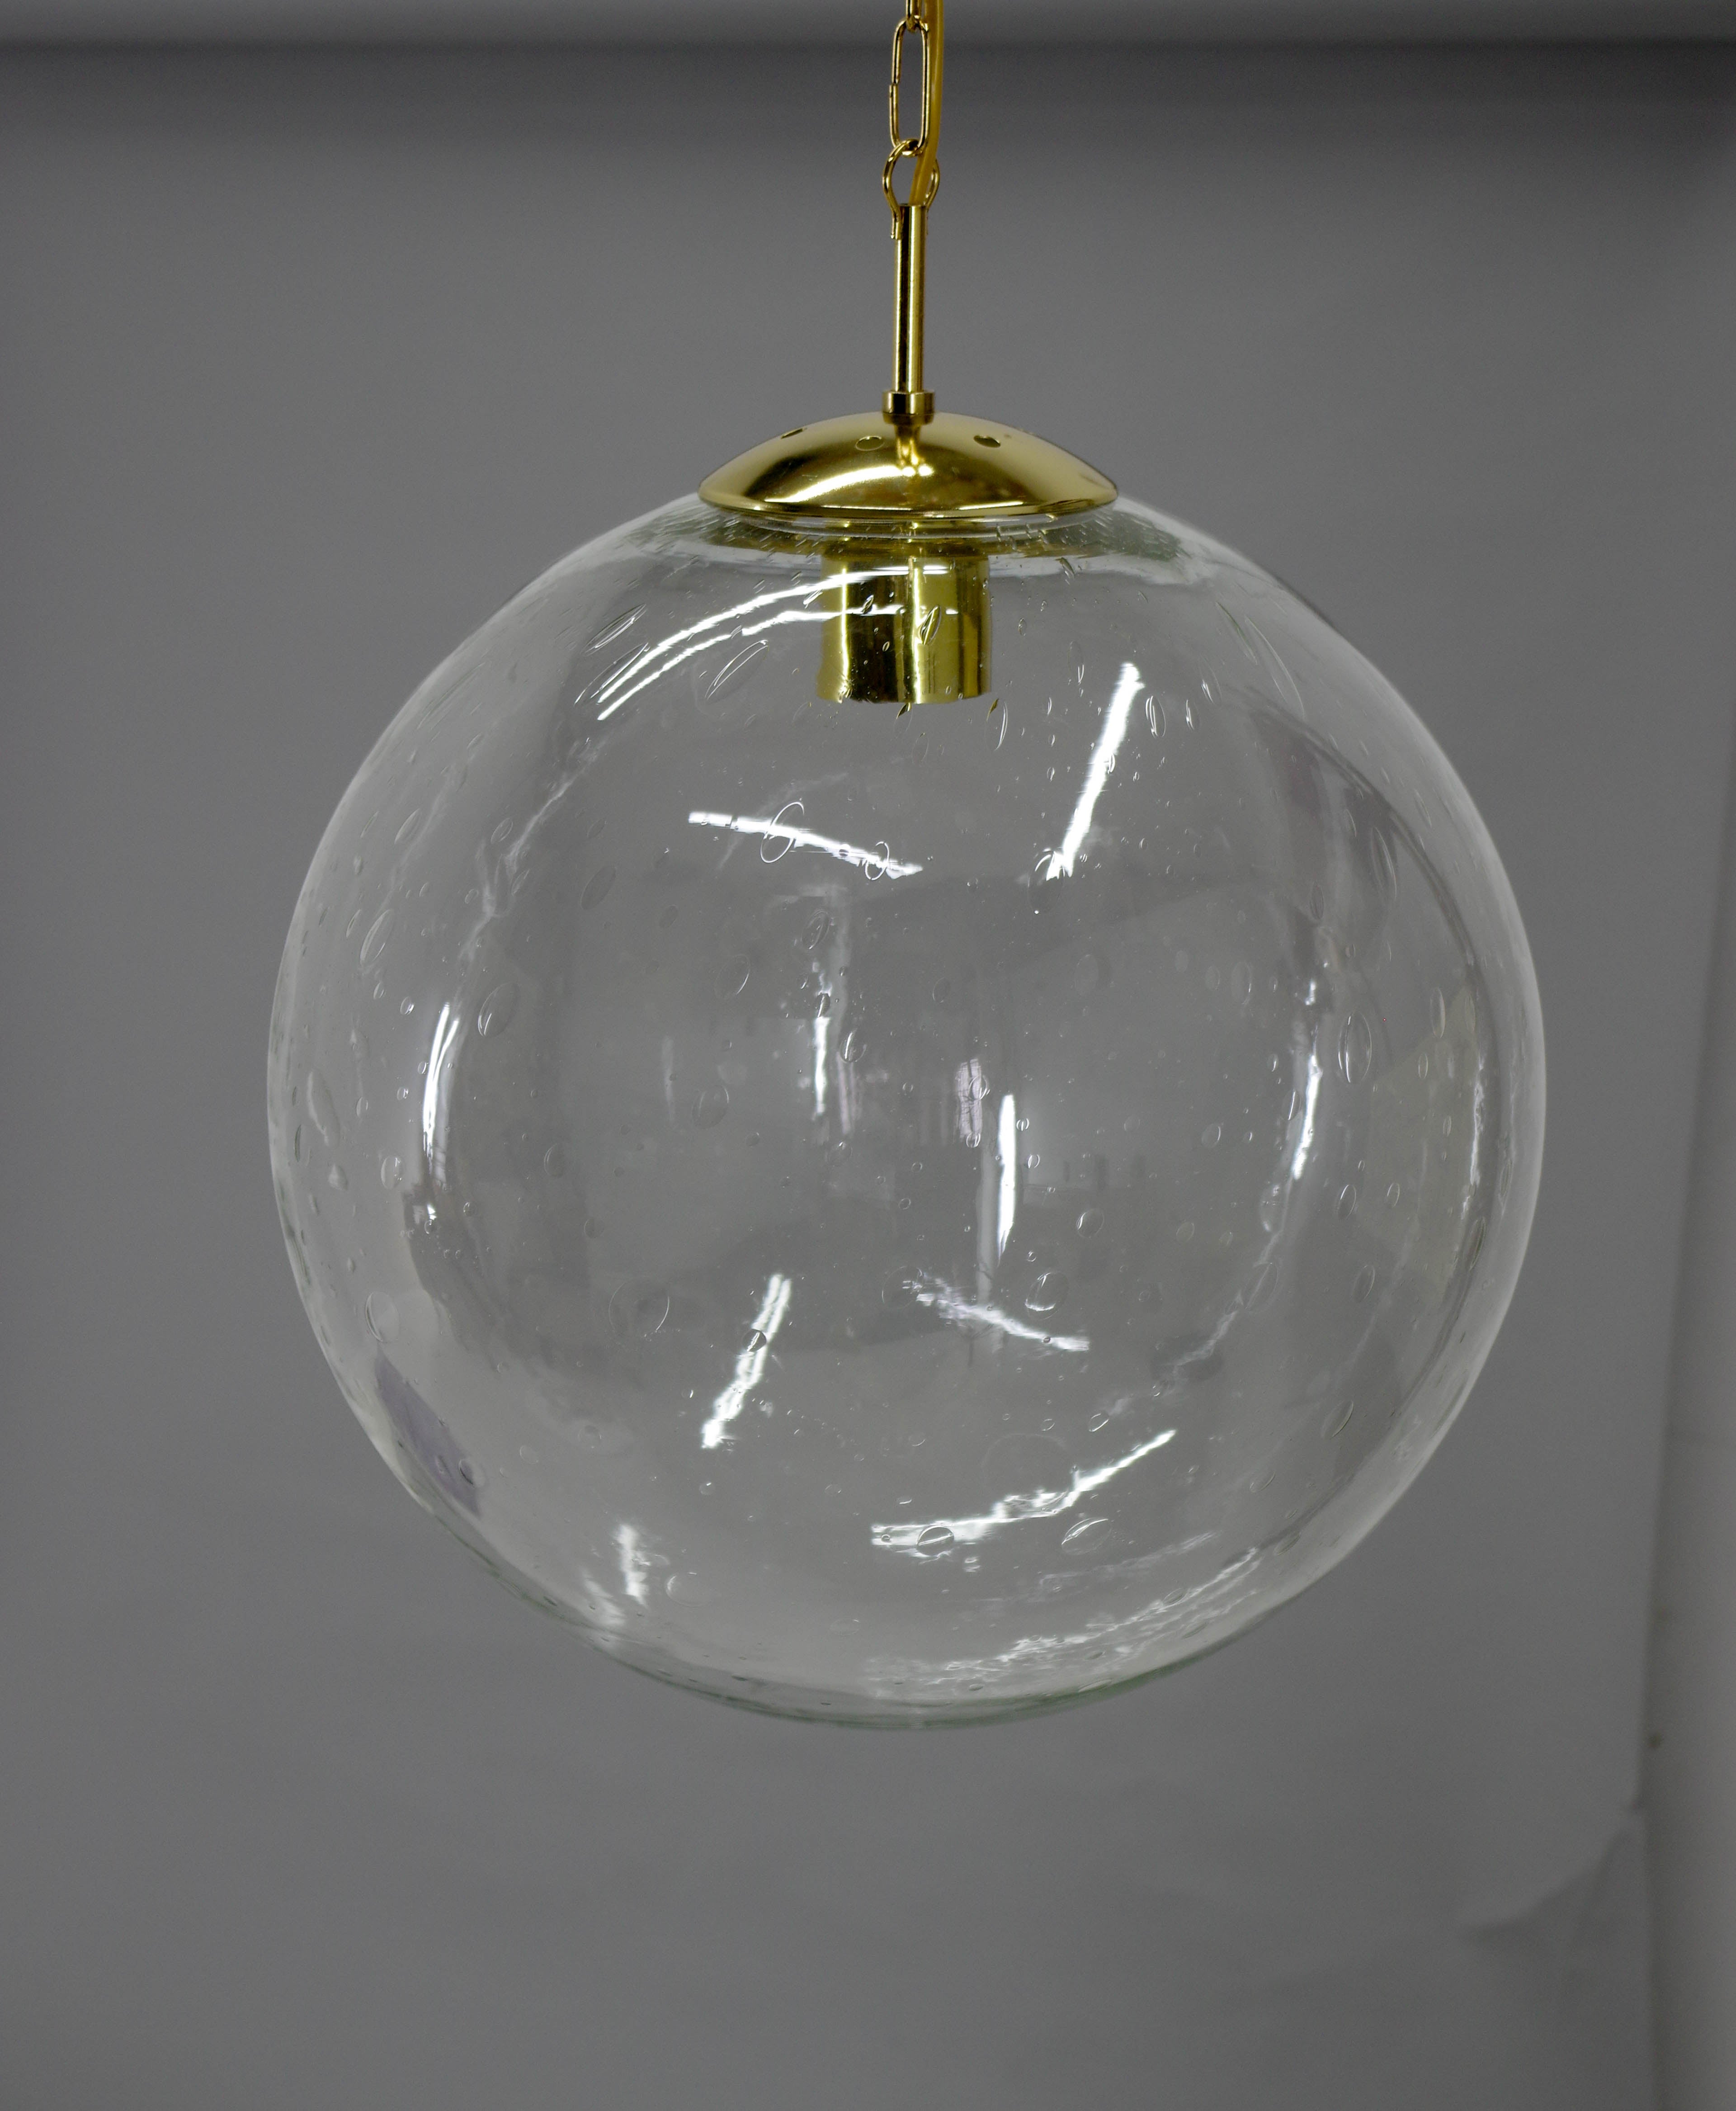 Big blown bubble glass pendant in perfect condition.
Rewired: 1x100W, E25-E27 bulb
US wiring compatible